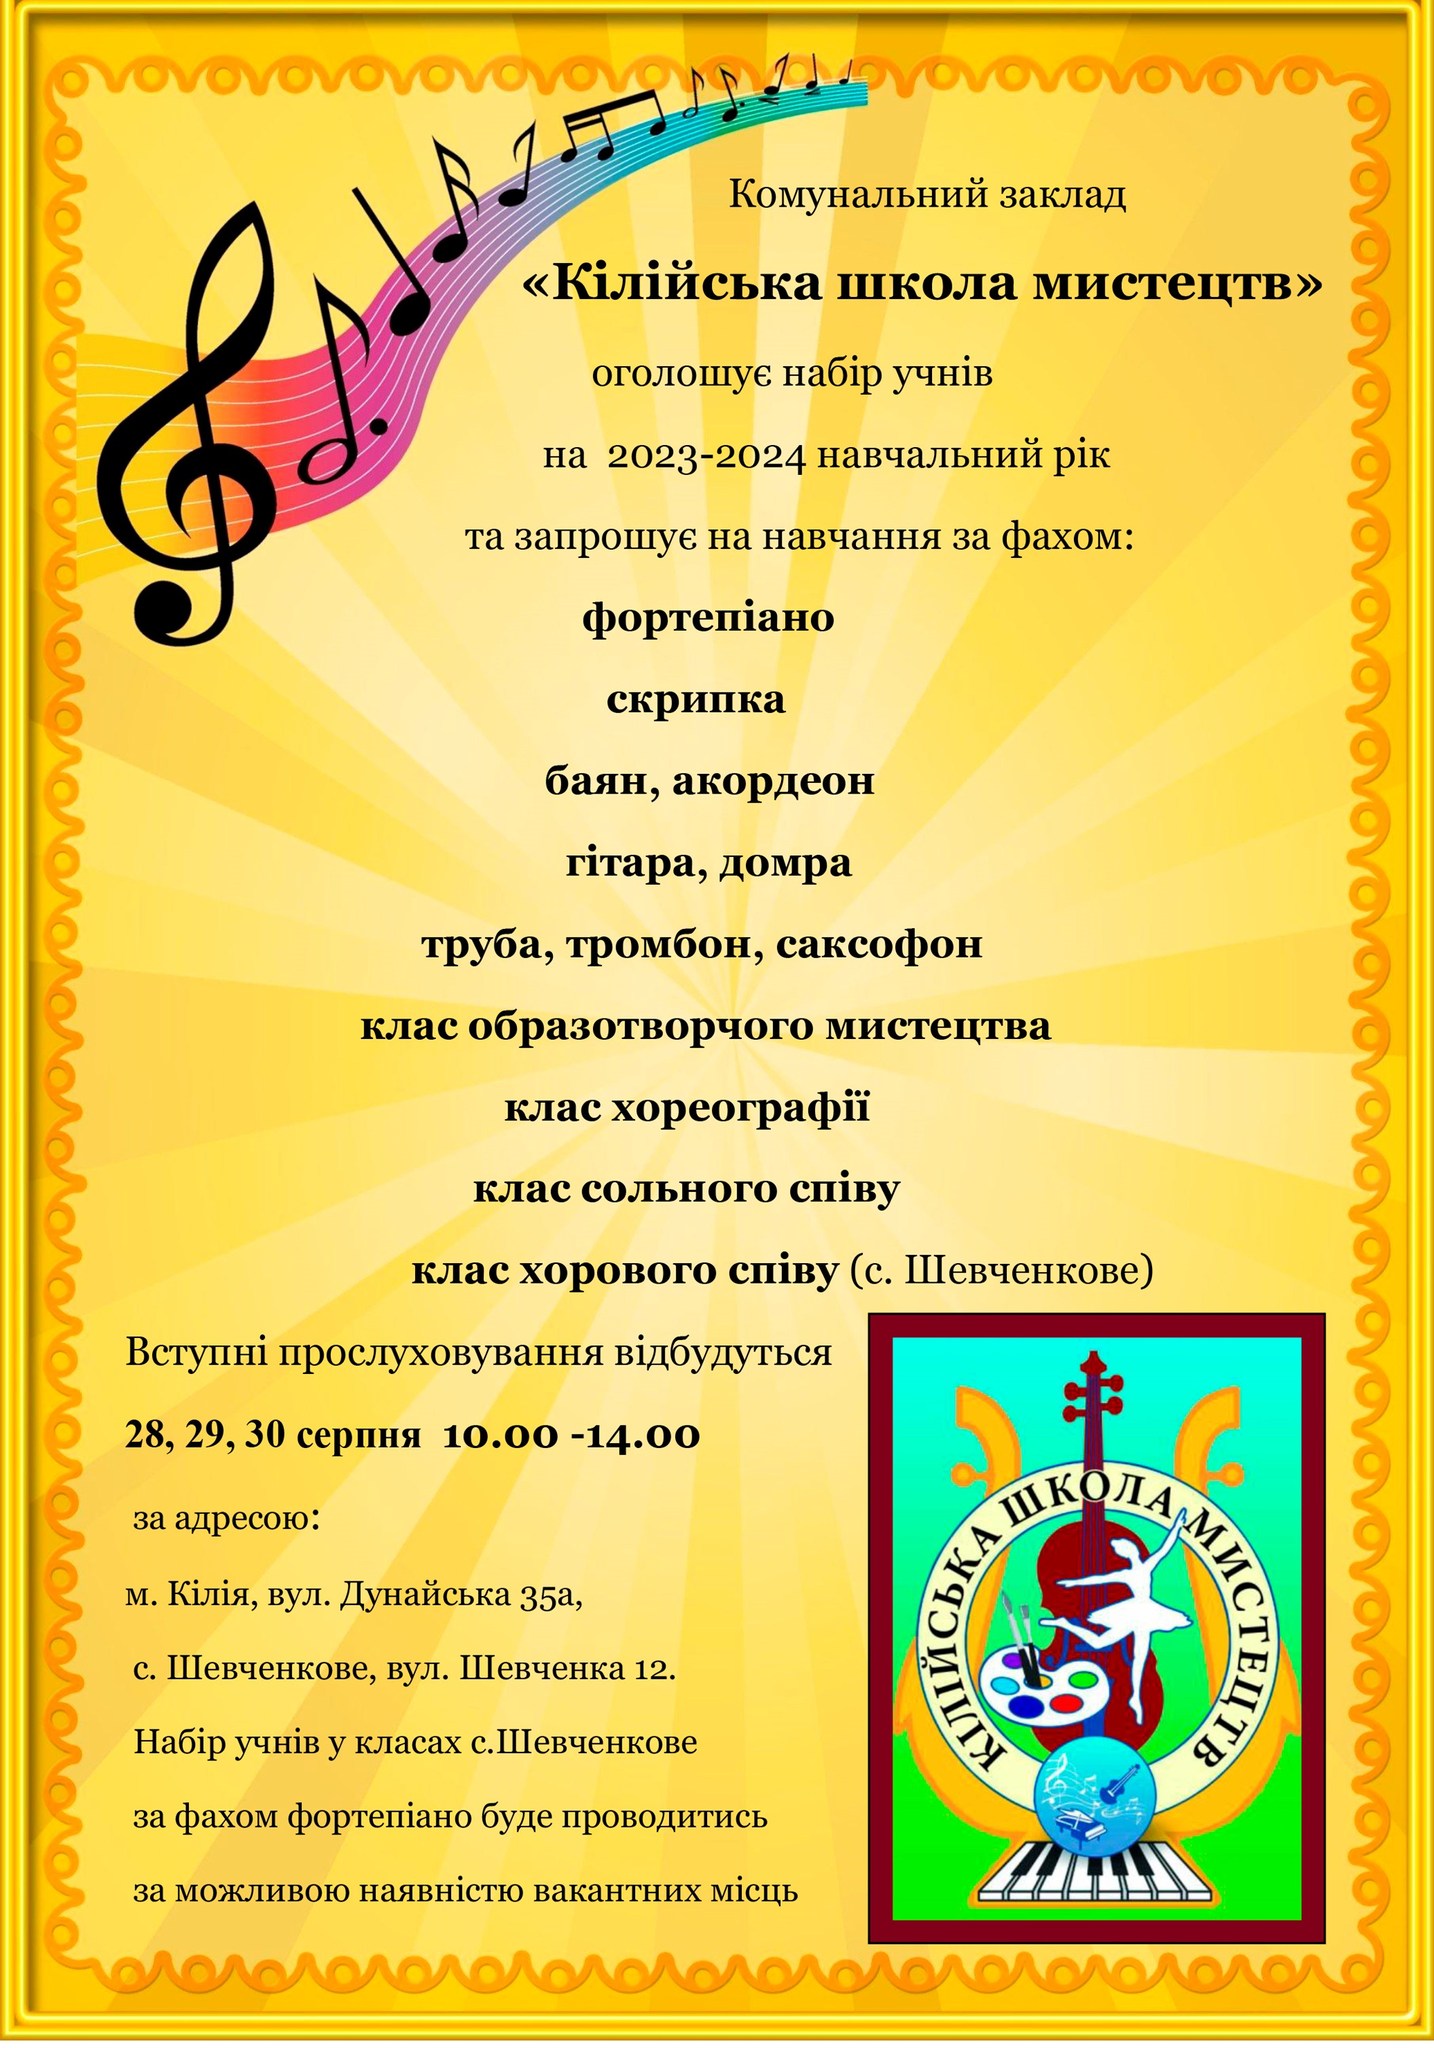 Кузницы талантов старейшего города Украины: часть вторая - о Килийской школе искусств, которая выпускает образцовых музыкантов, художников и танцоров